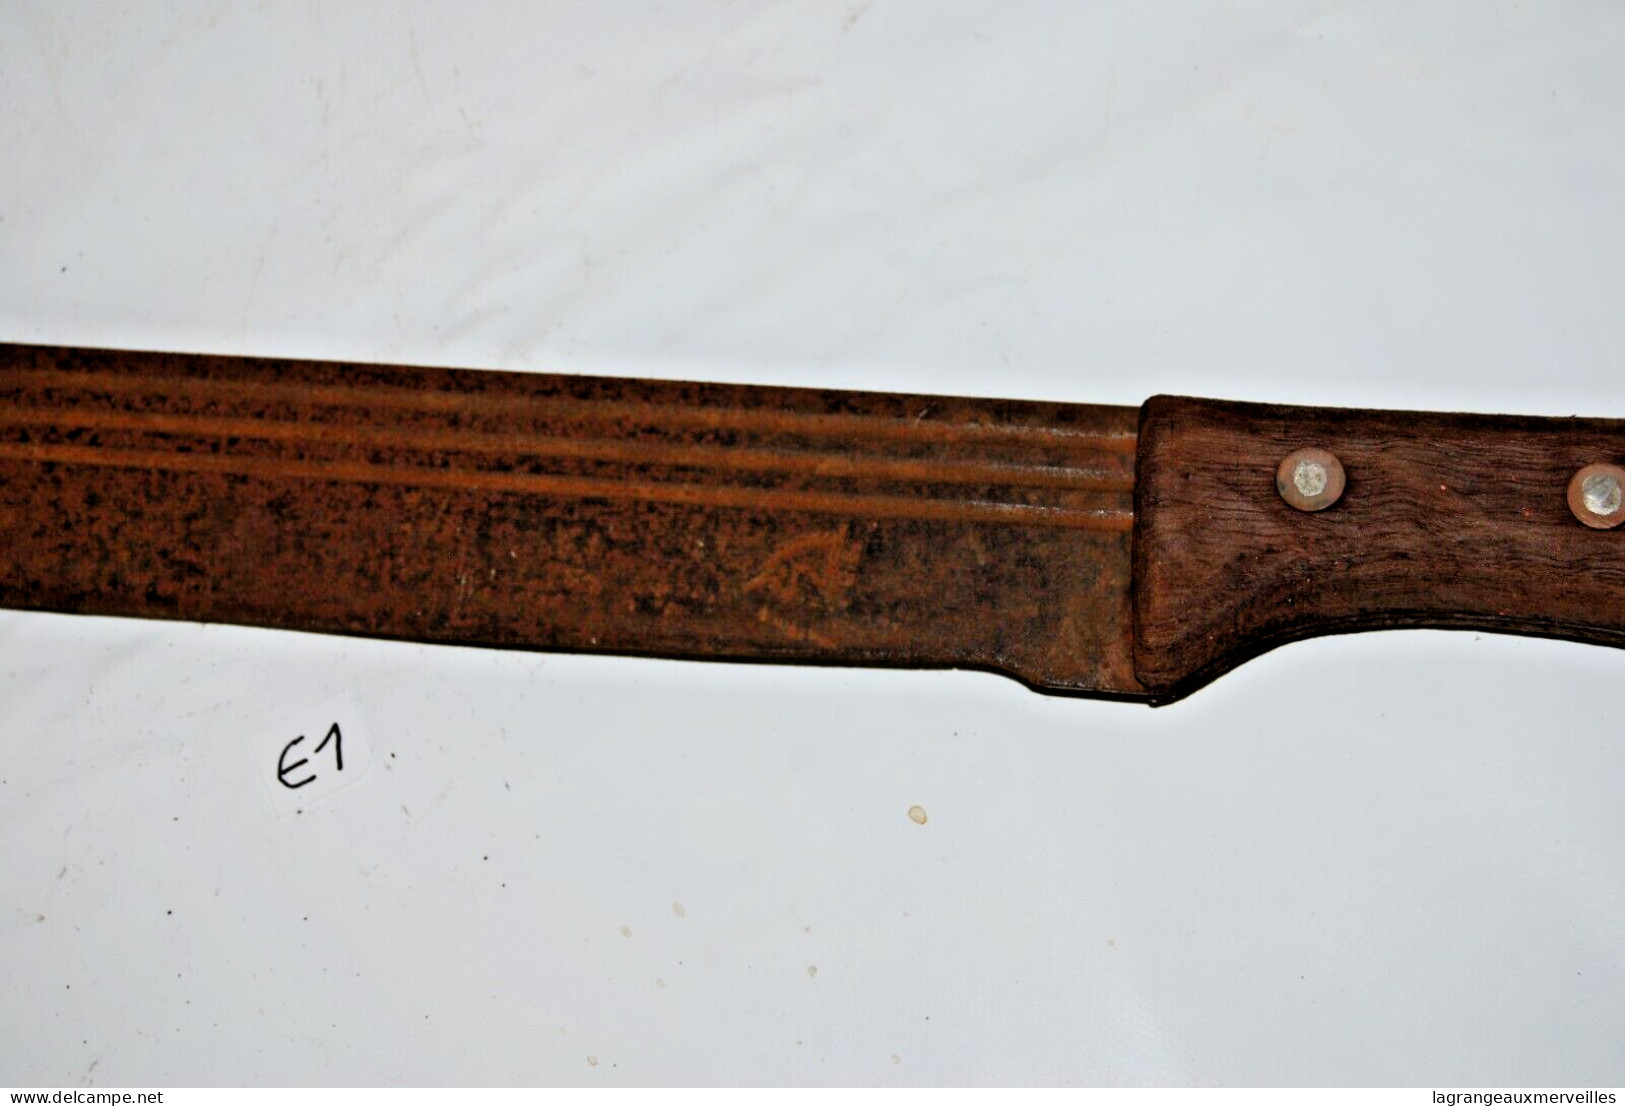 E1 Ancienne machette - outil ancien - ethnique - tribal